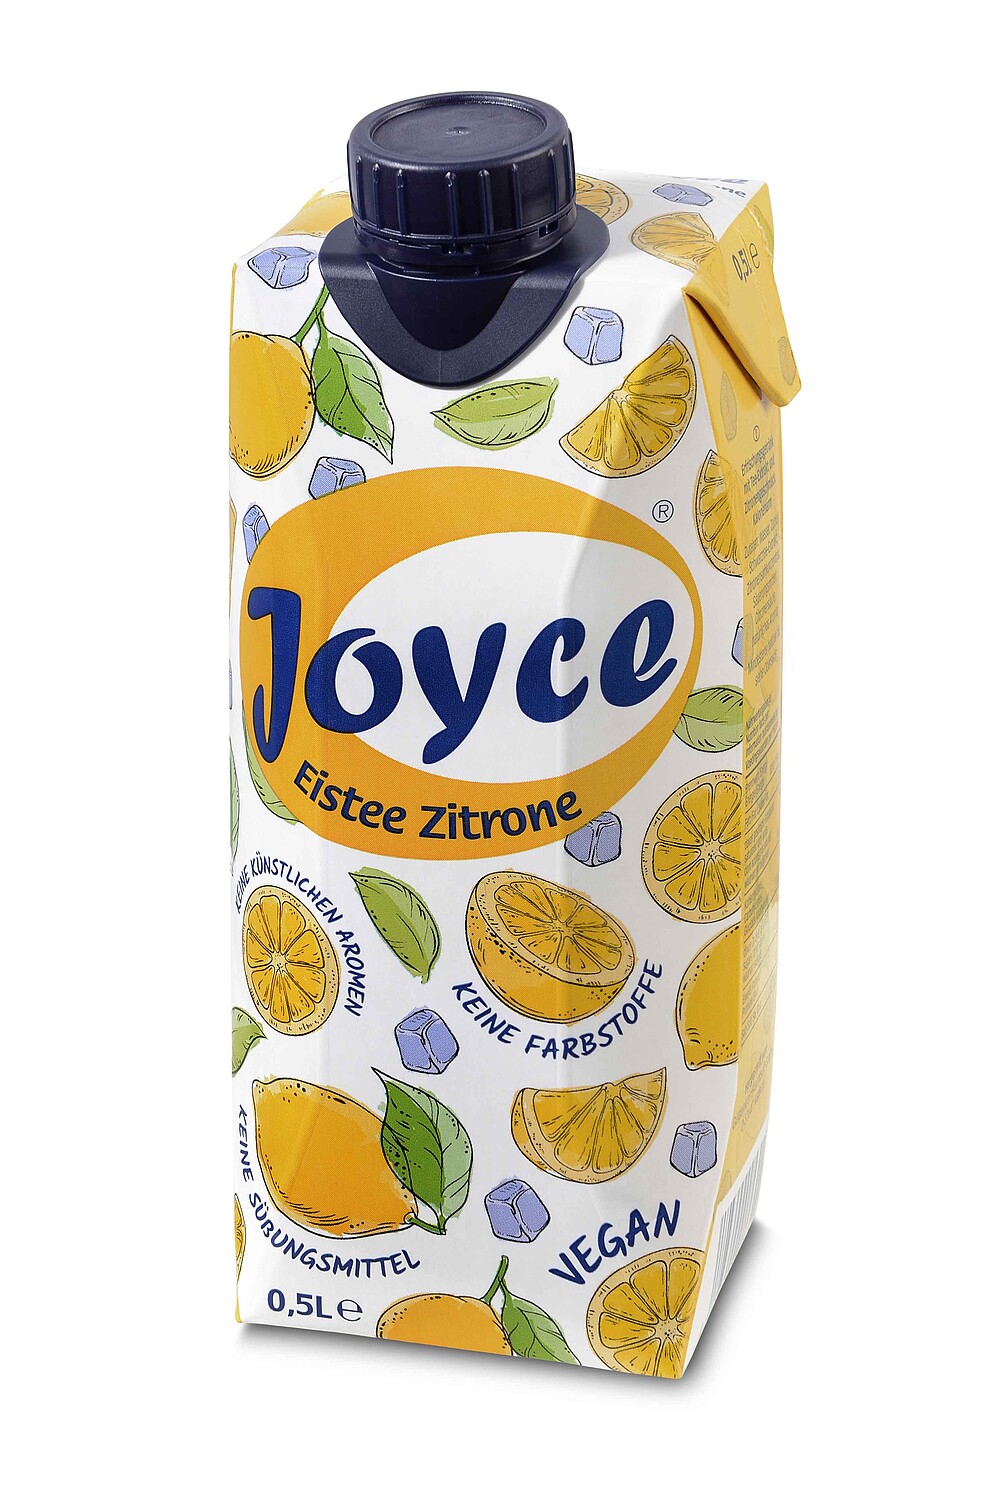 Joyce Eistee Zitrone 0,5 Liter Tetra 